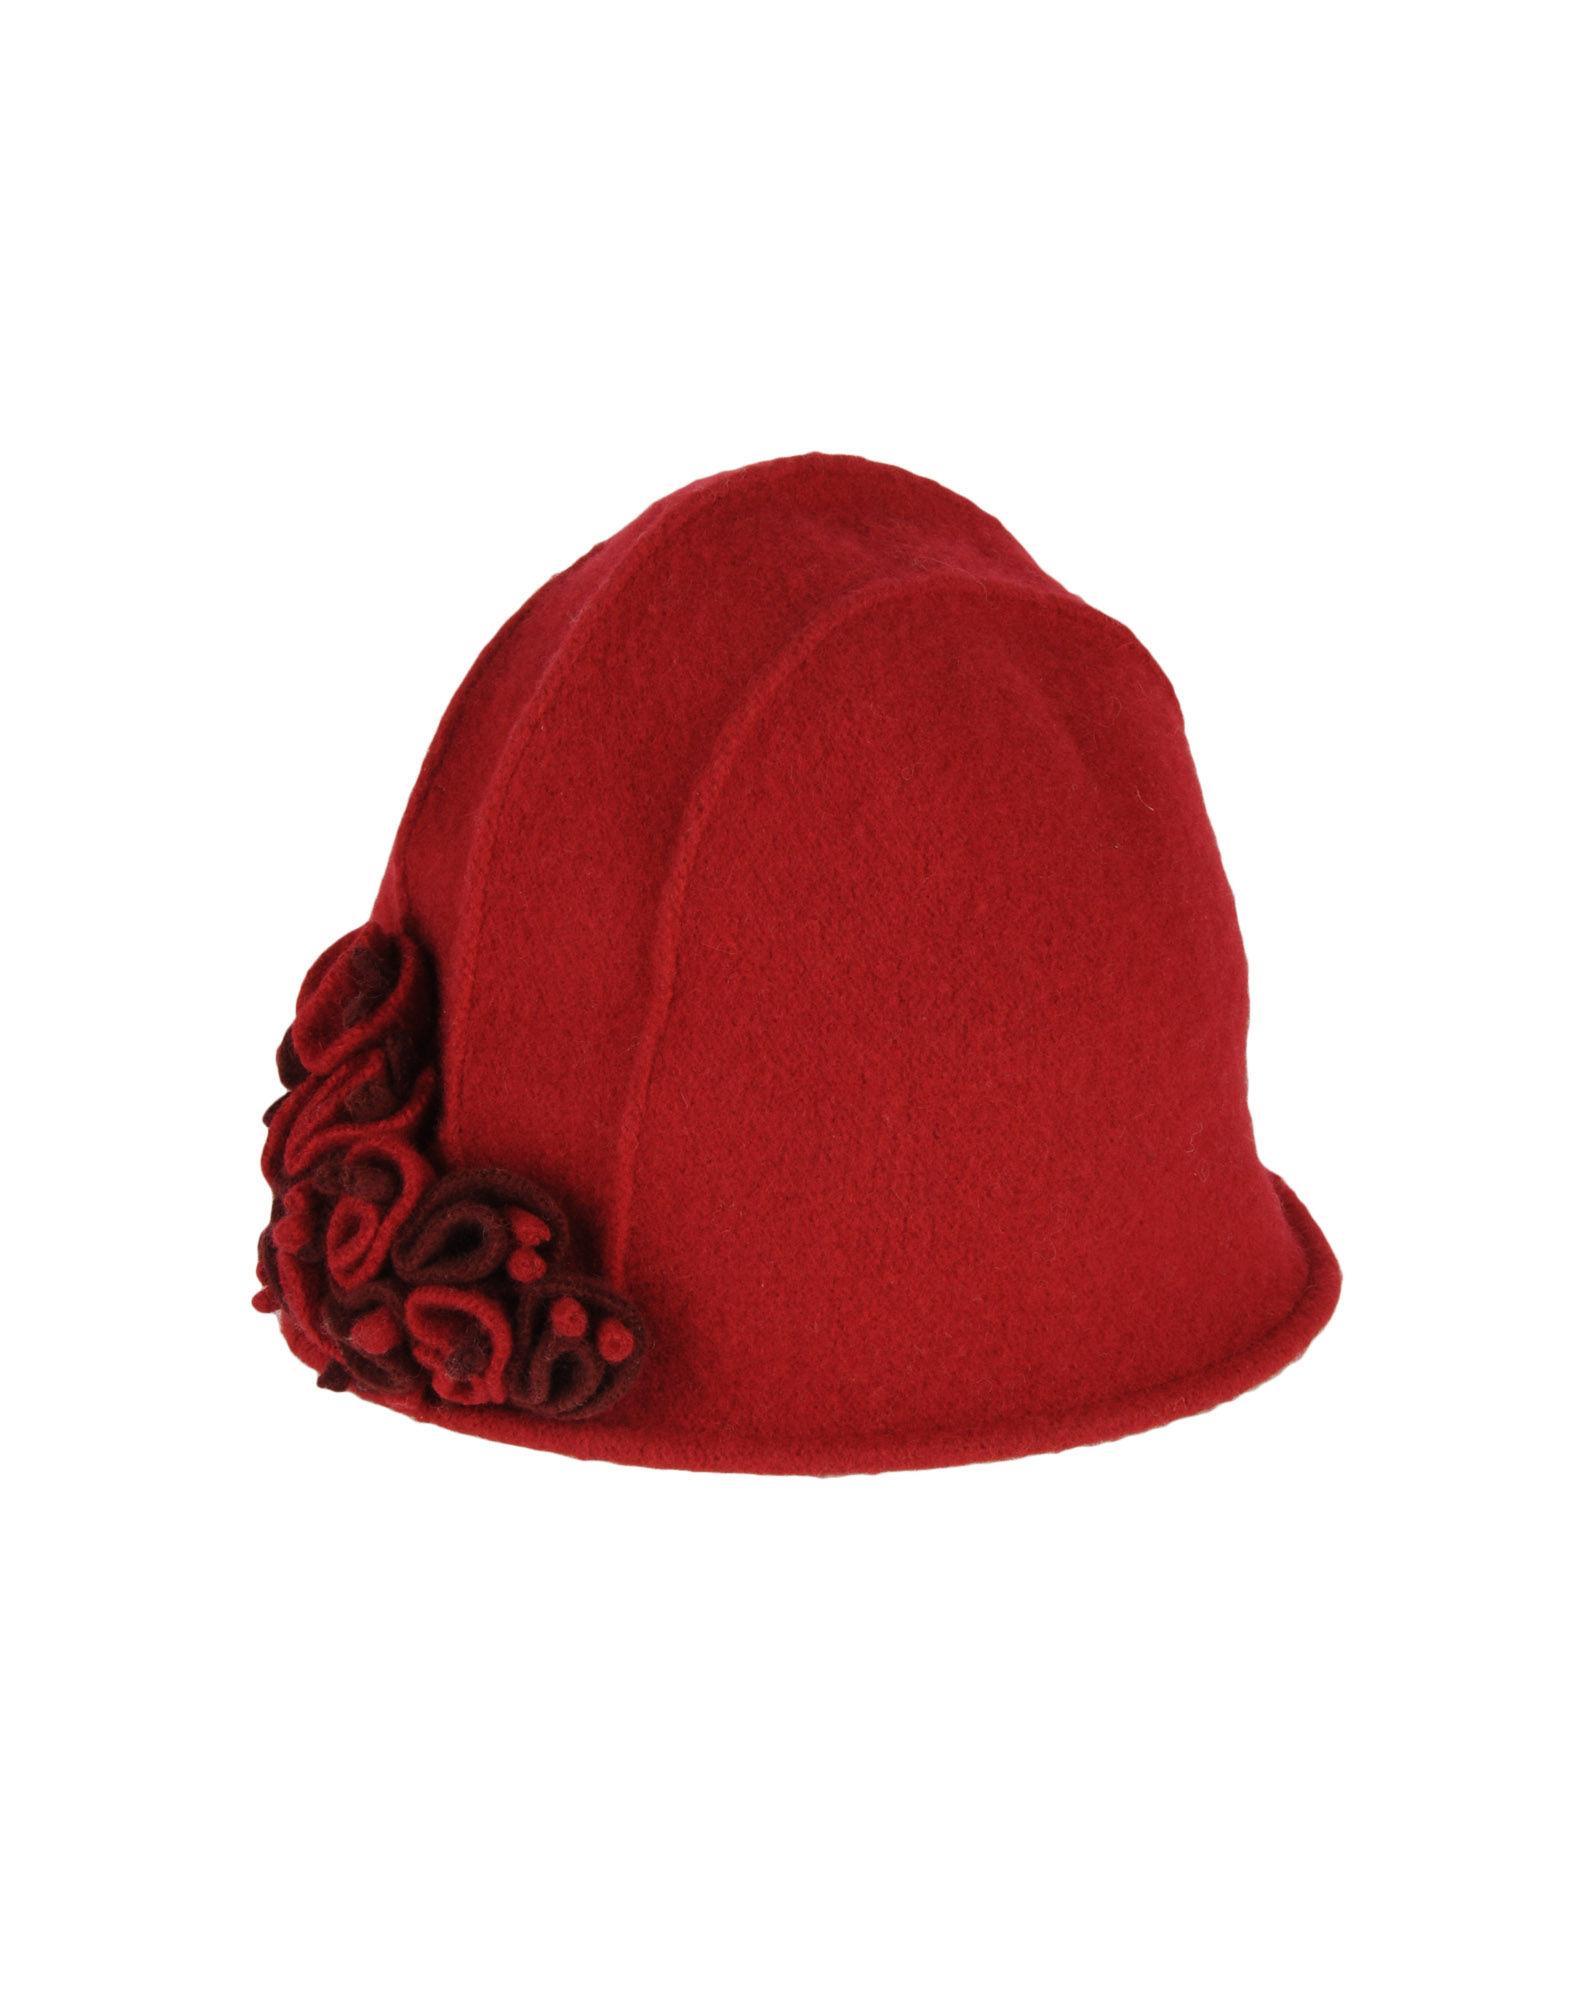 Foto valmori patrizia per le chapeau sombreros
